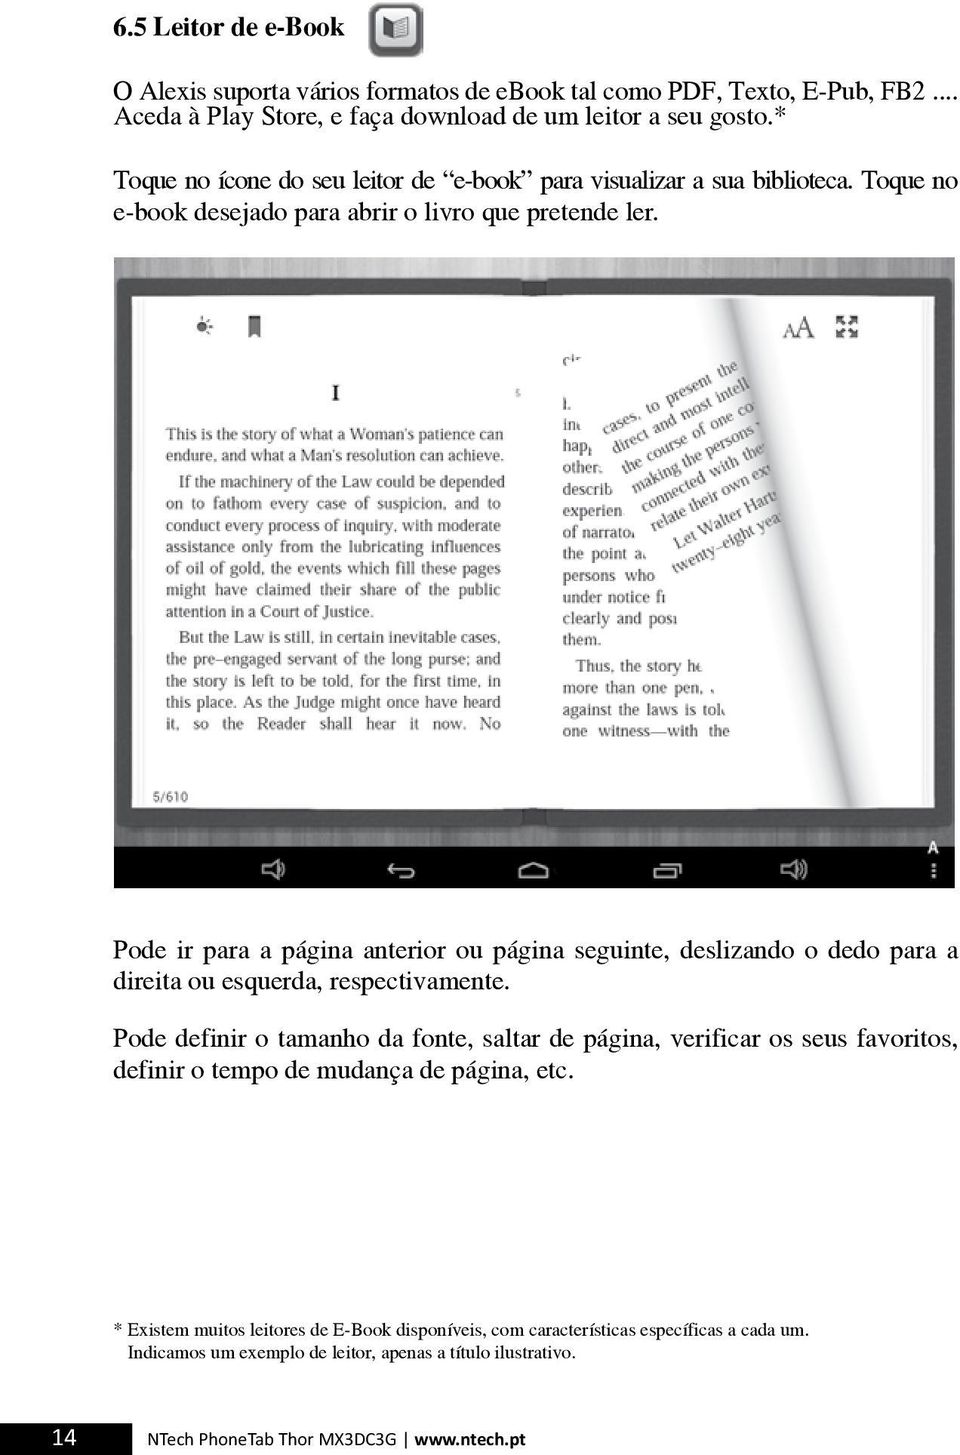 Pode ir para a página anterior ou página seguinte, deslizando o dedo para a direita ou esquerda, respectivamente.